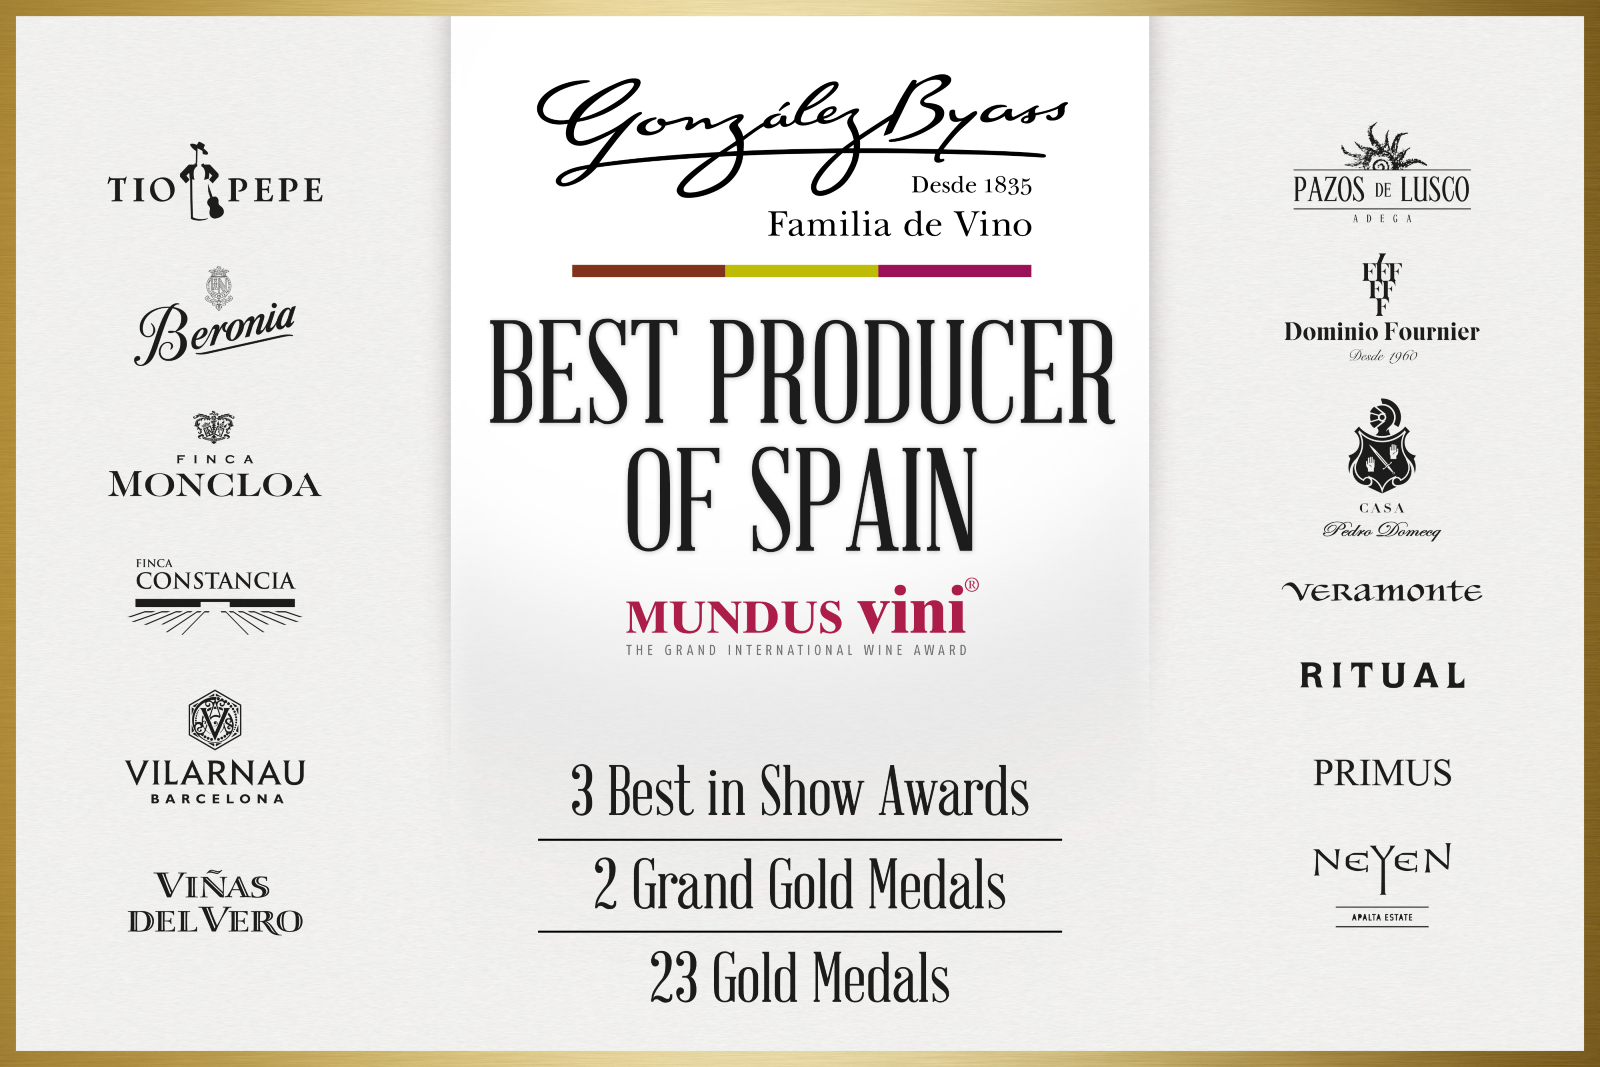 Best Producer of Spain Gonzalez Byass Mundus Vini 